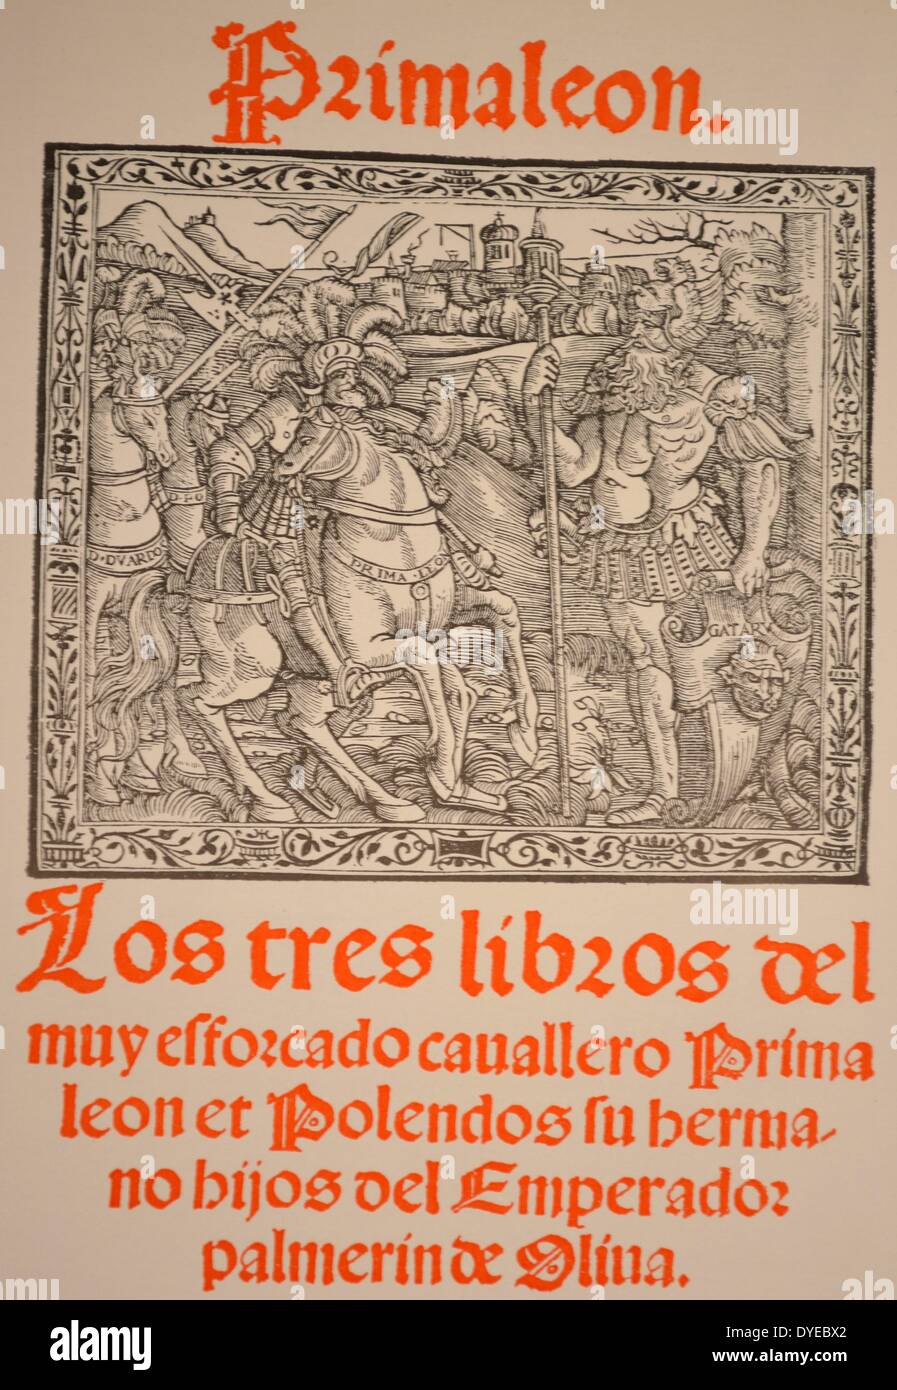 Titelseite von Primaleon et Polendos su Hermano, Hijos del Emperador Palmerin de Oliva. Venedig, Juan Antonio de Nicolini de Sabio. Vom 1534 Stockfoto